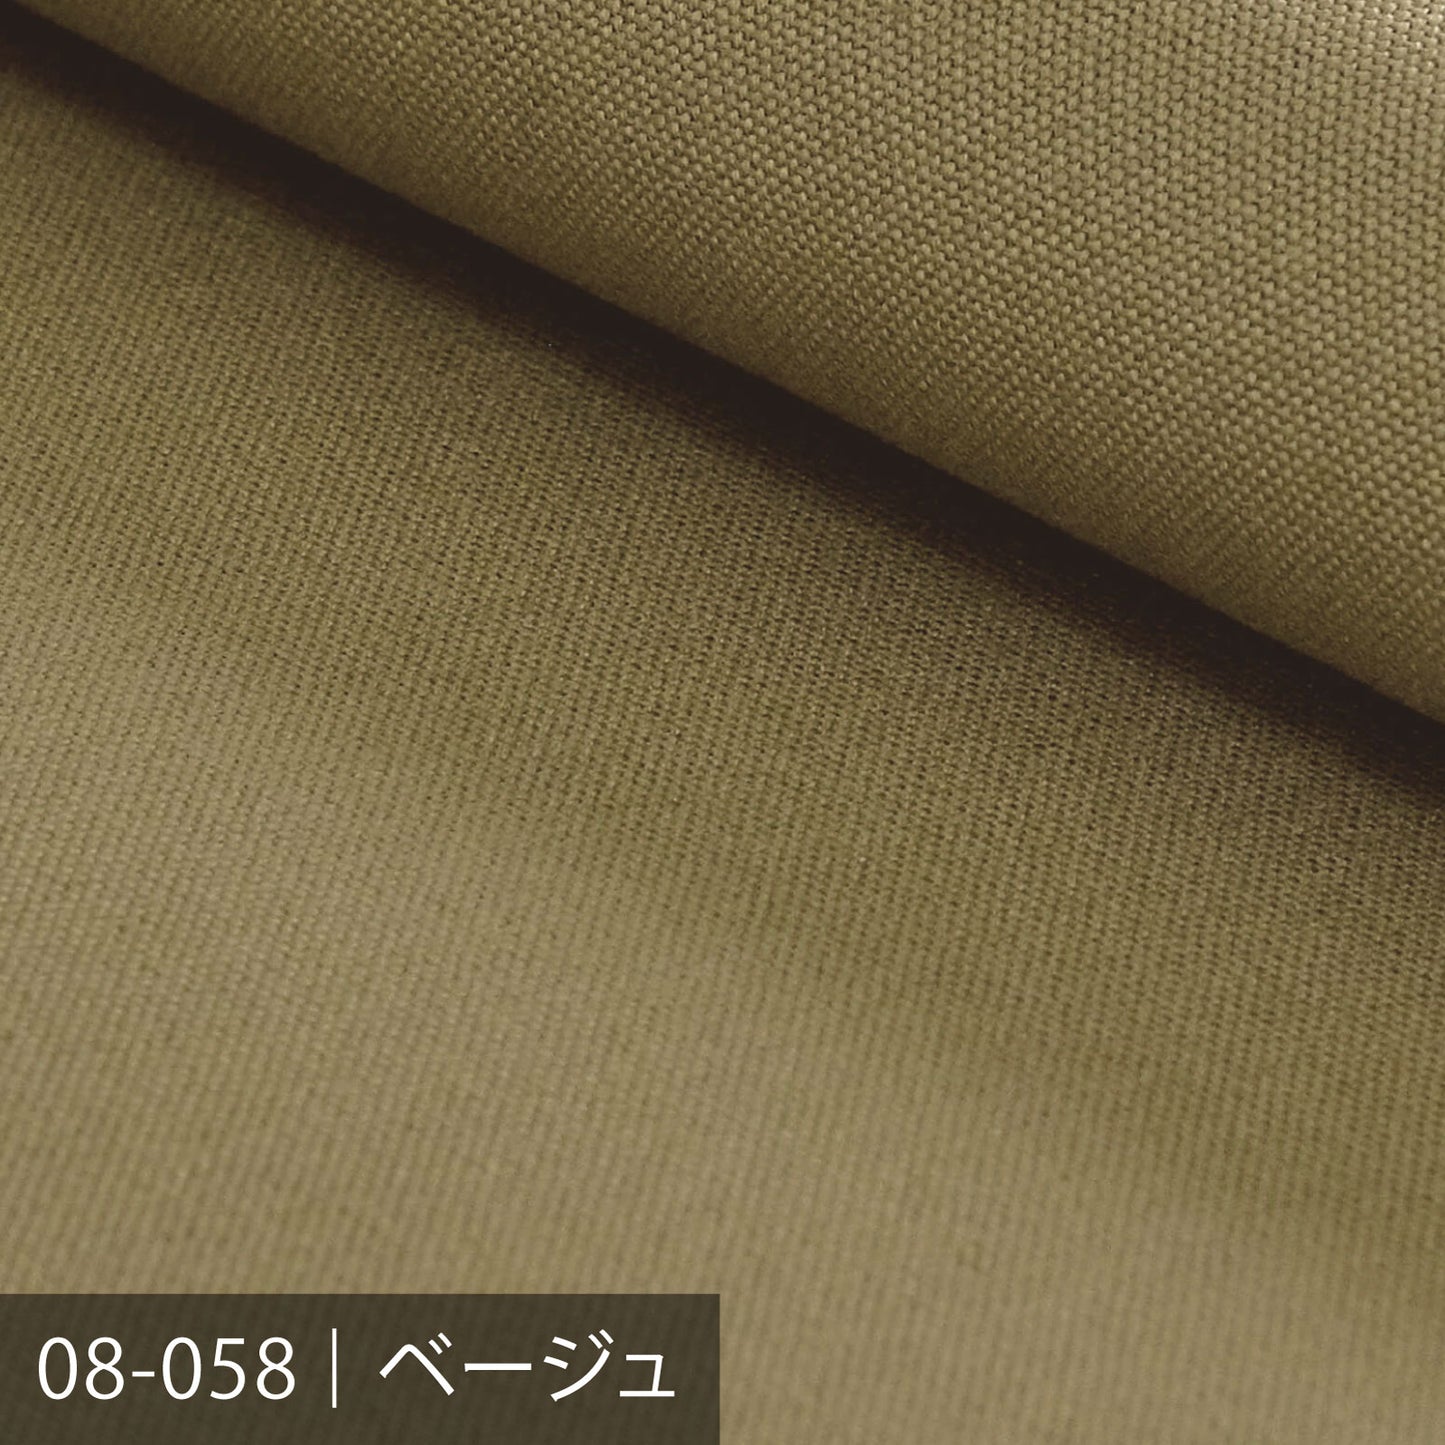 8号カラー帆布 50m巻 ／100色展開 キナリ・ベージュ系